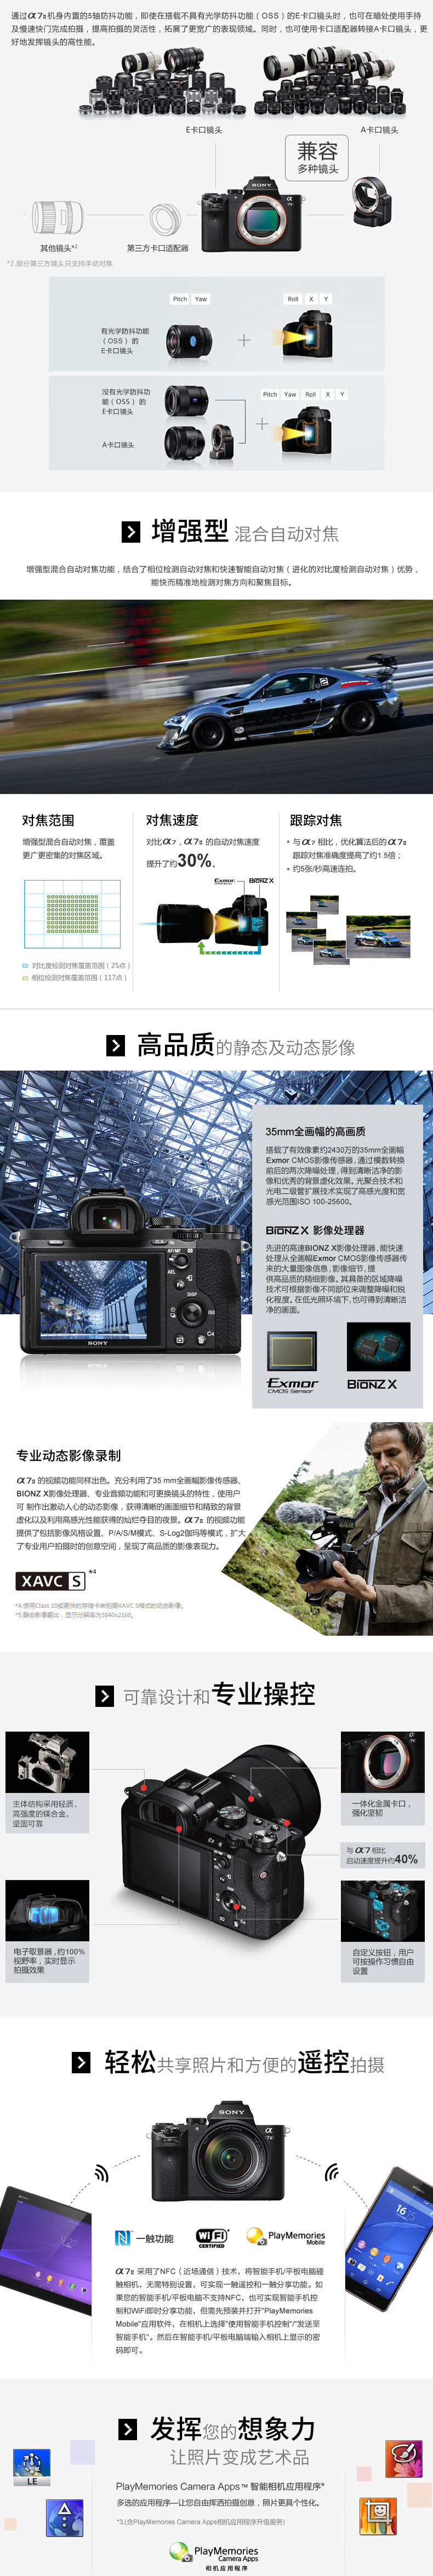 索尼(SONY) ILCE-A7M2全画幅微单相机 (FE28-70mm+FE70-200F4 mm)双镜头套装